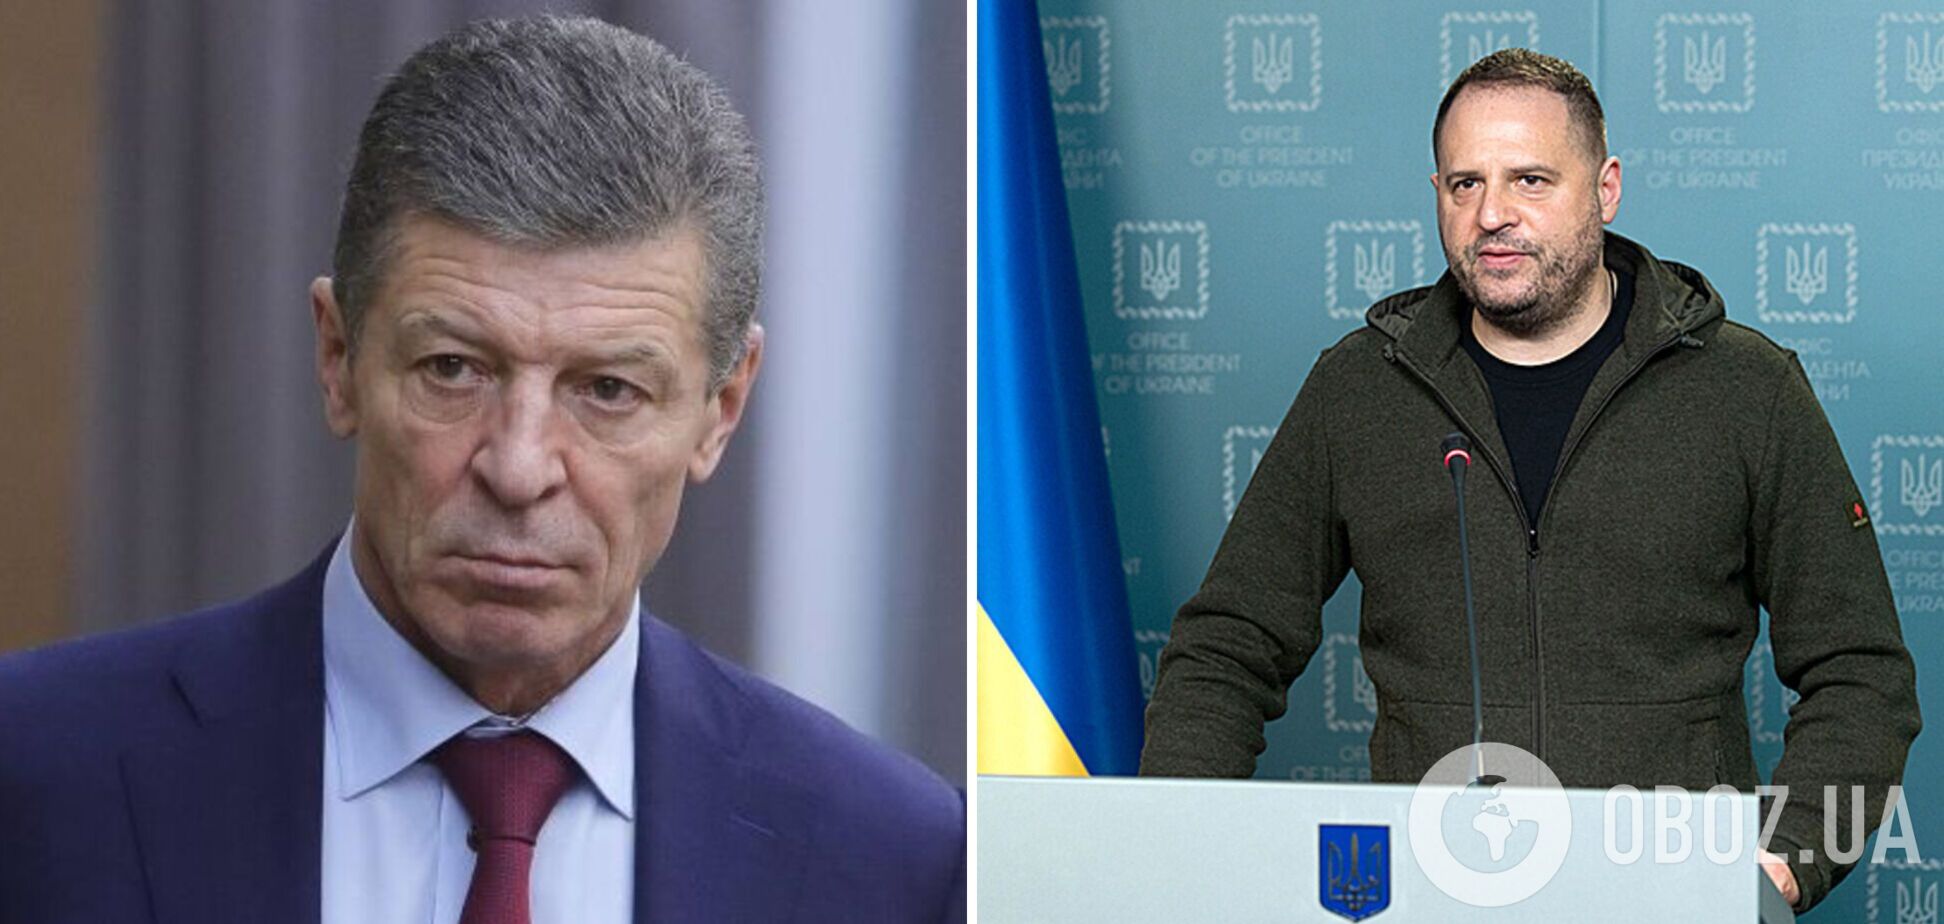 Козак 24 лютого пропонував Україні здатися: стало відомо про дзвінок в ОПУ у перші години після вторгнення РФ